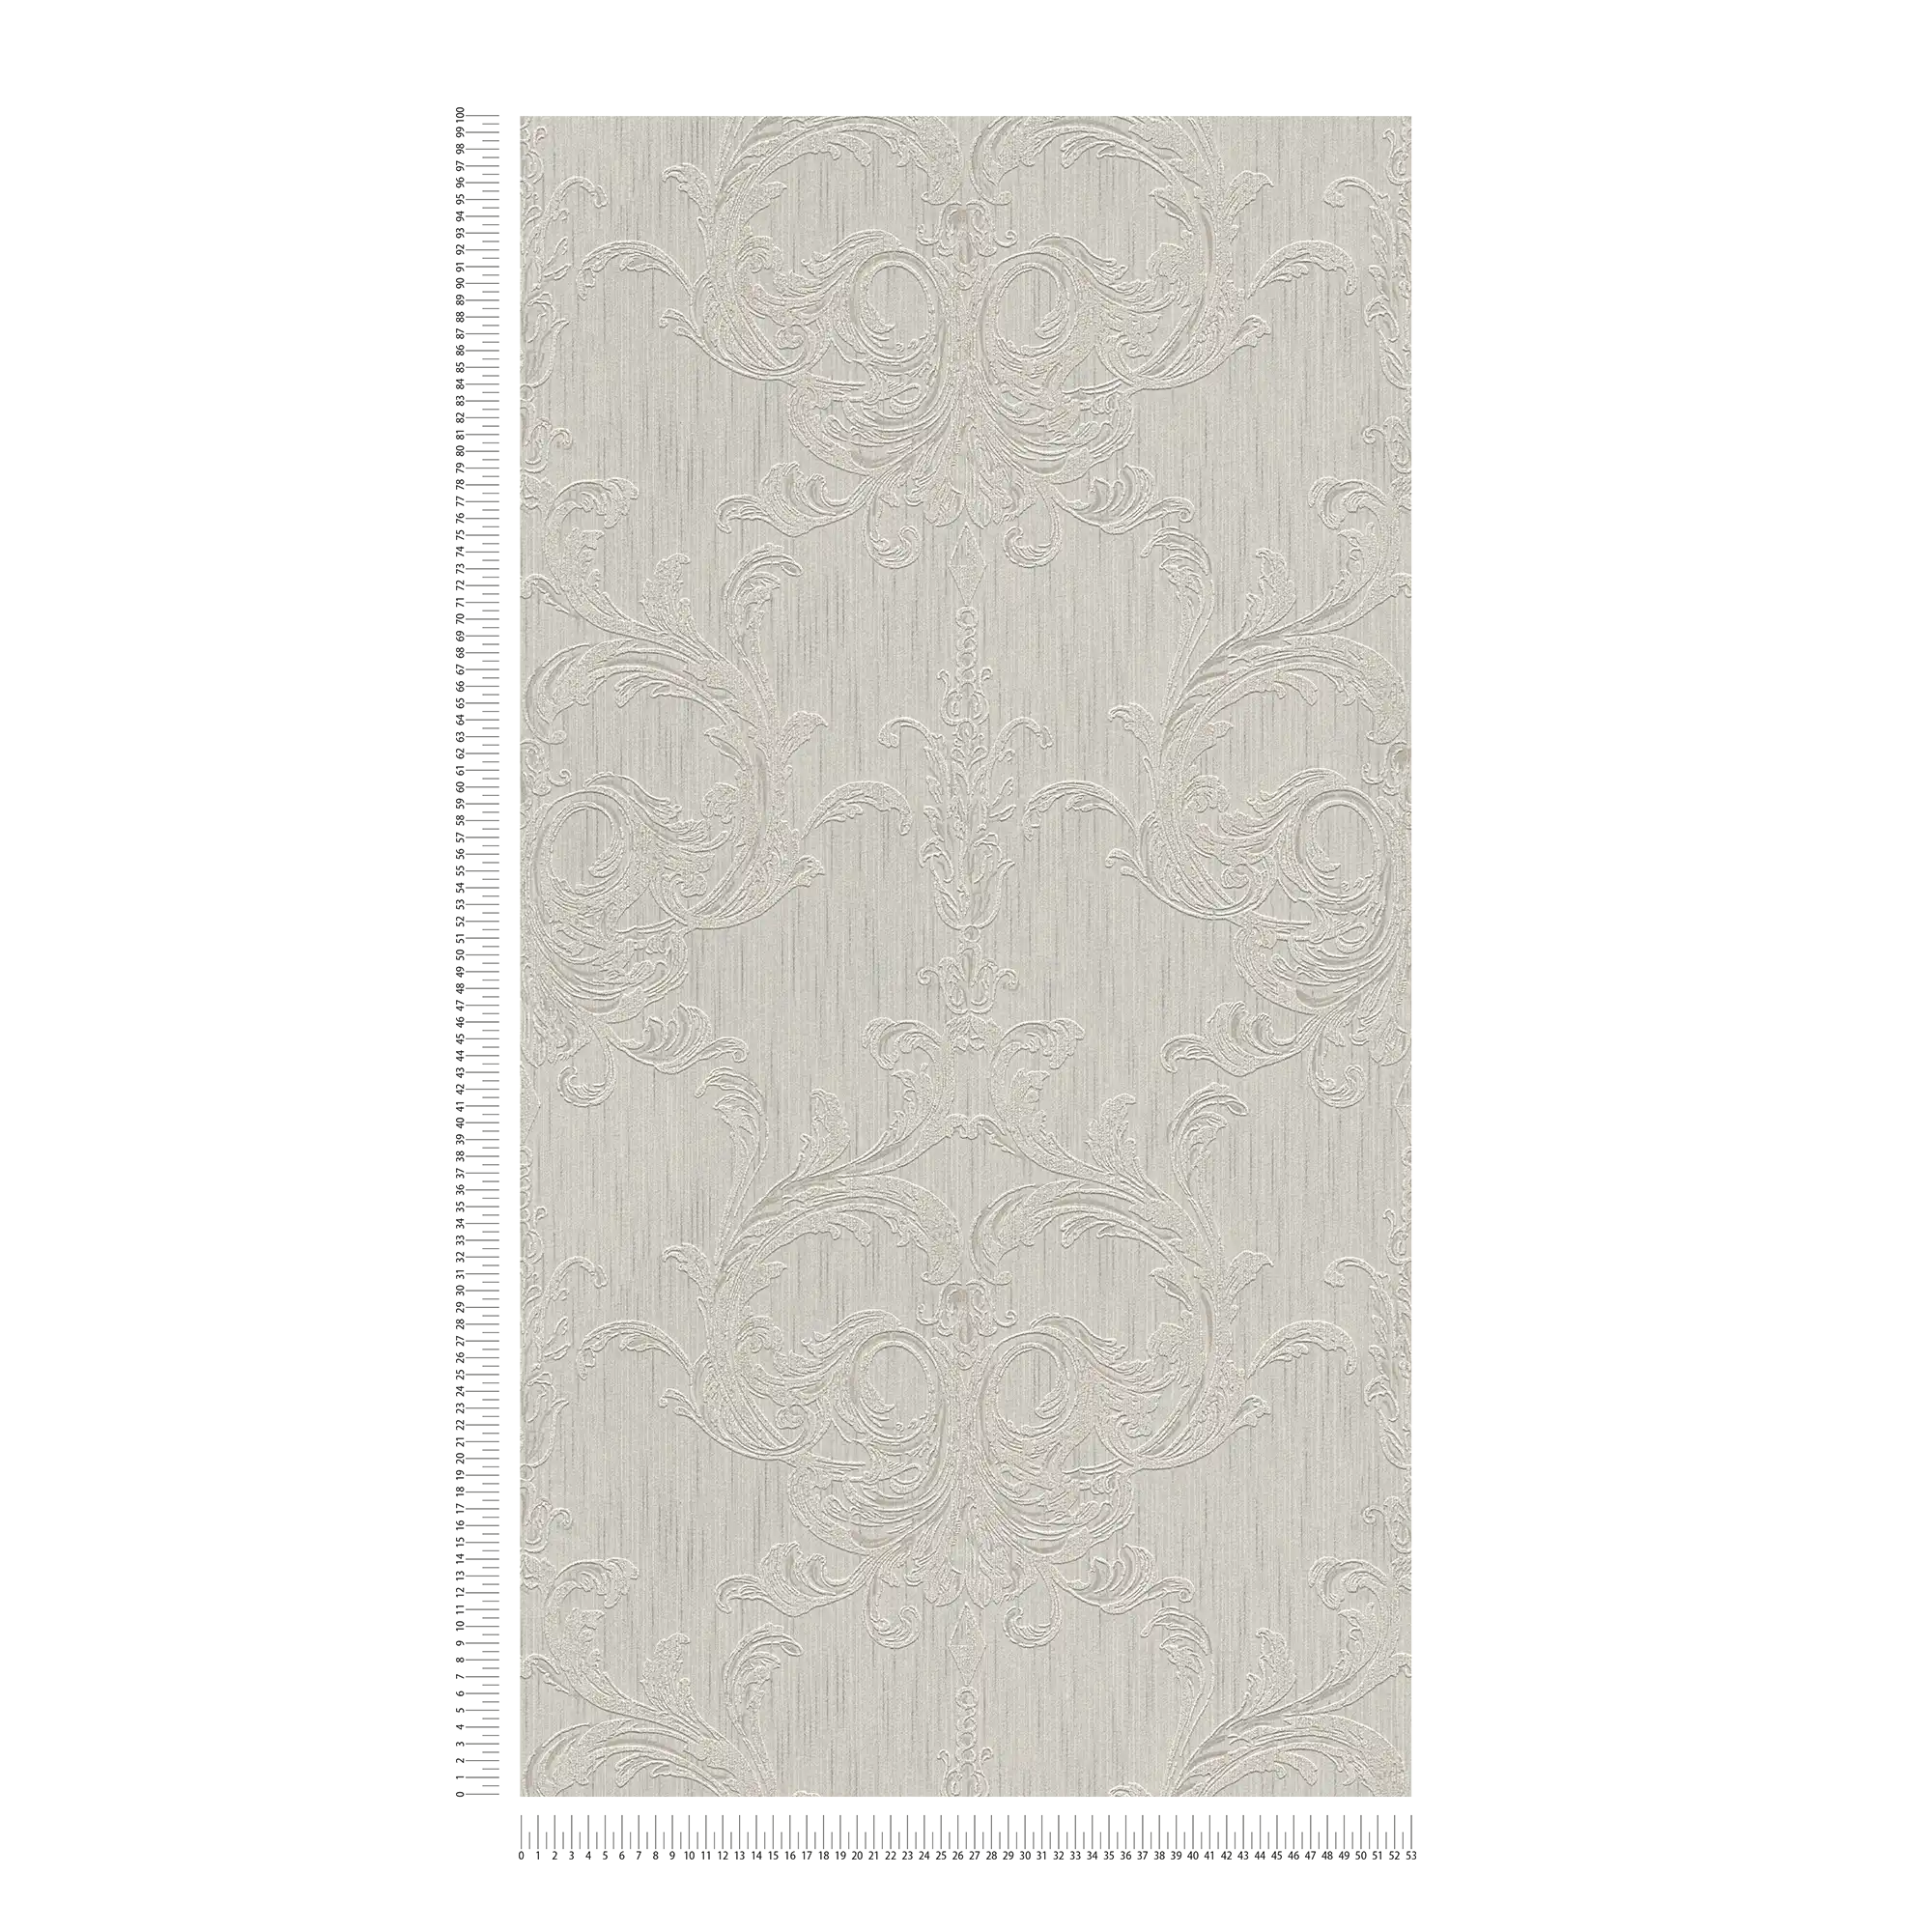             Filigraan ornamentbehang met structuurpatroon - beige
        